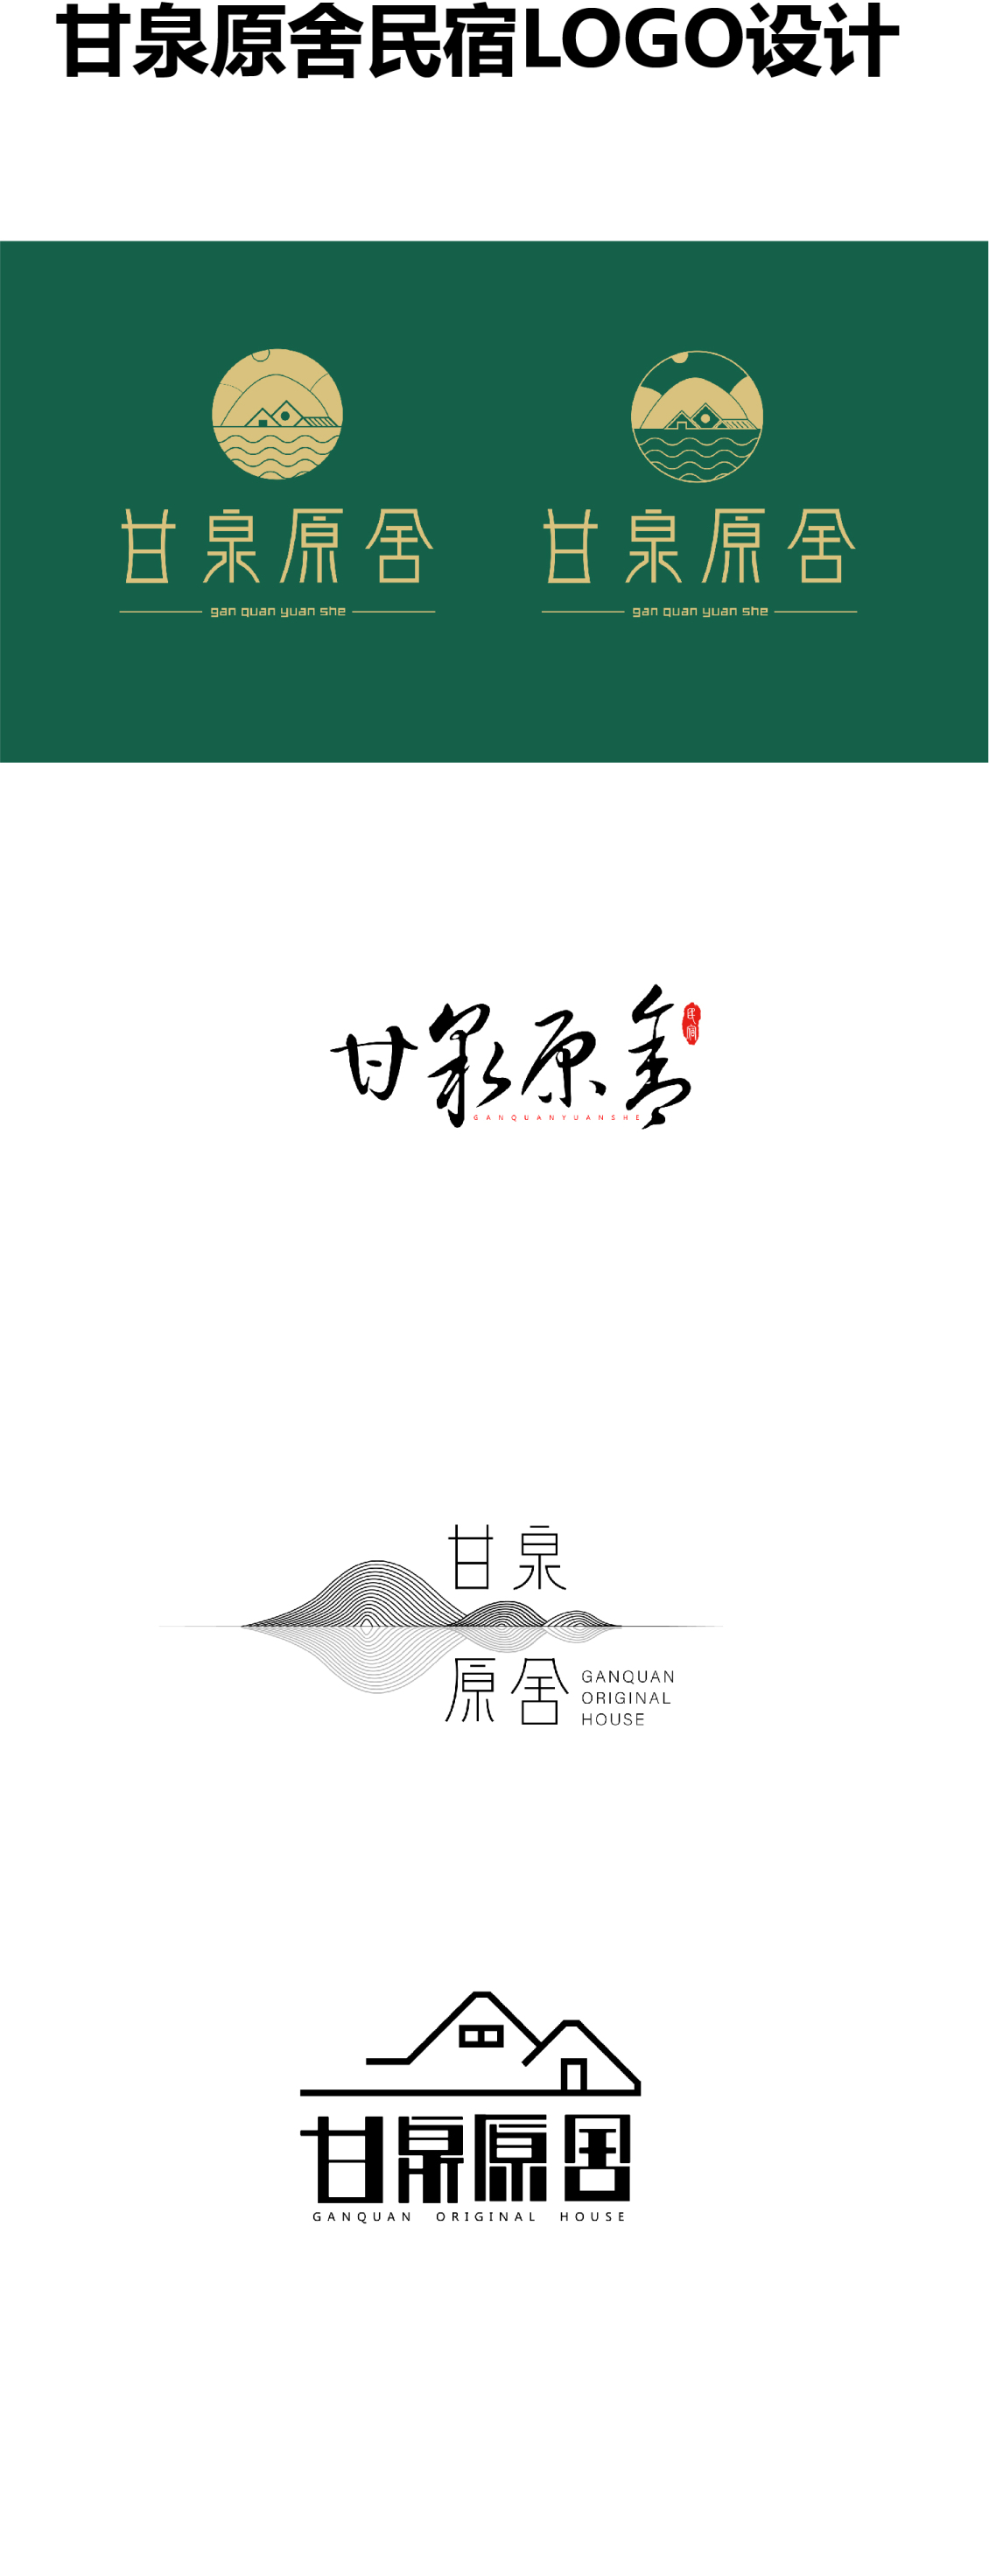 淘宝美工y154339甘泉原舍民宿logo设计作品